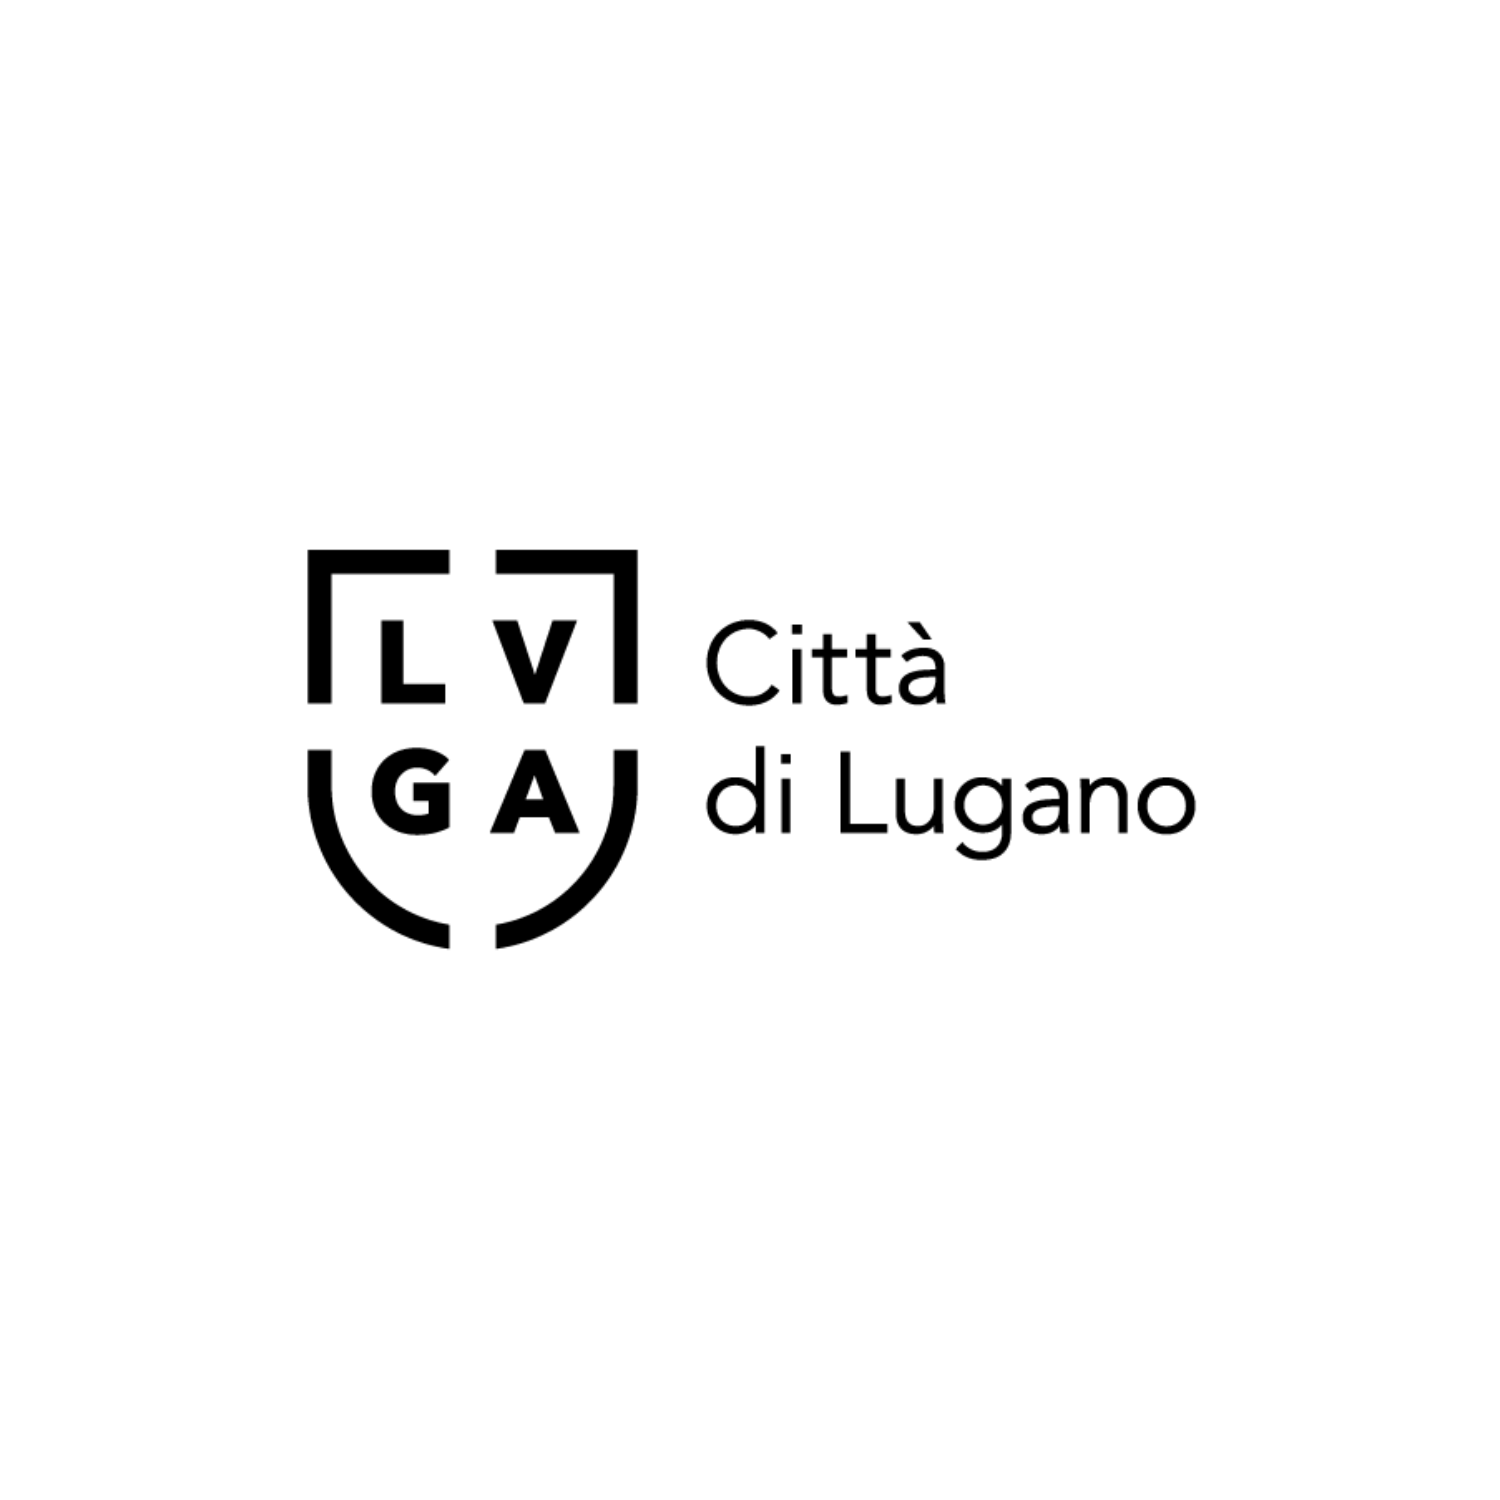 Logo Città di Lugano